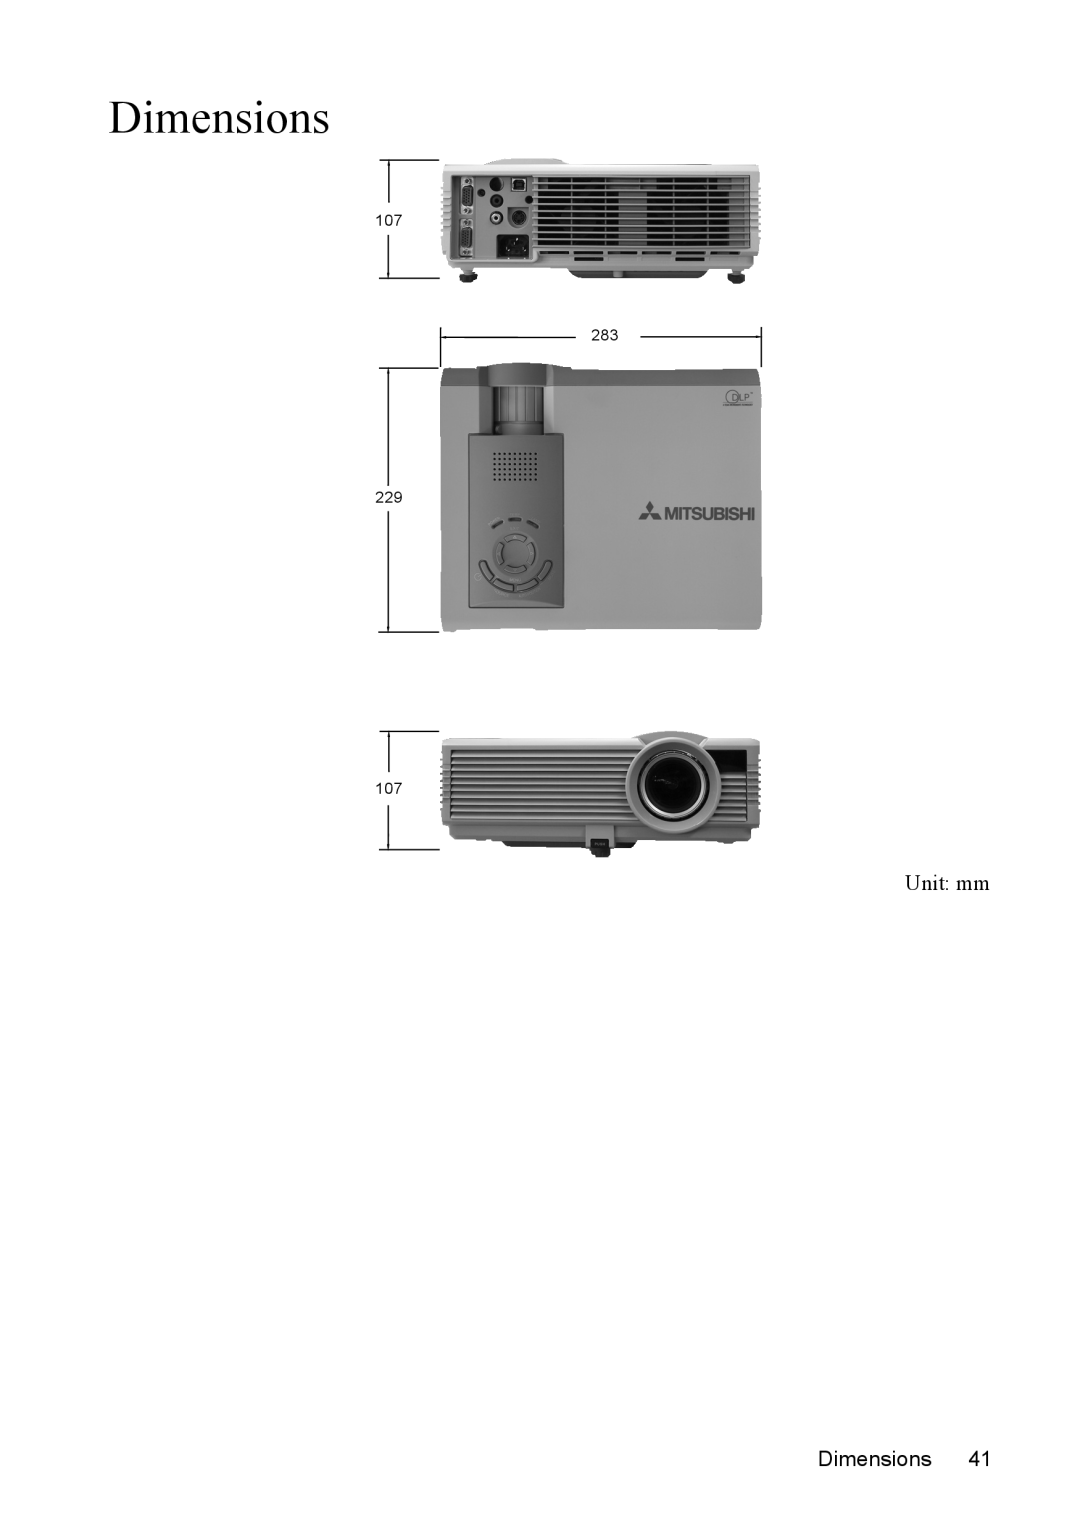 Mitsubishi Electronics SE2U user manual Dimensions, Unit mm, 107 283 229 107 